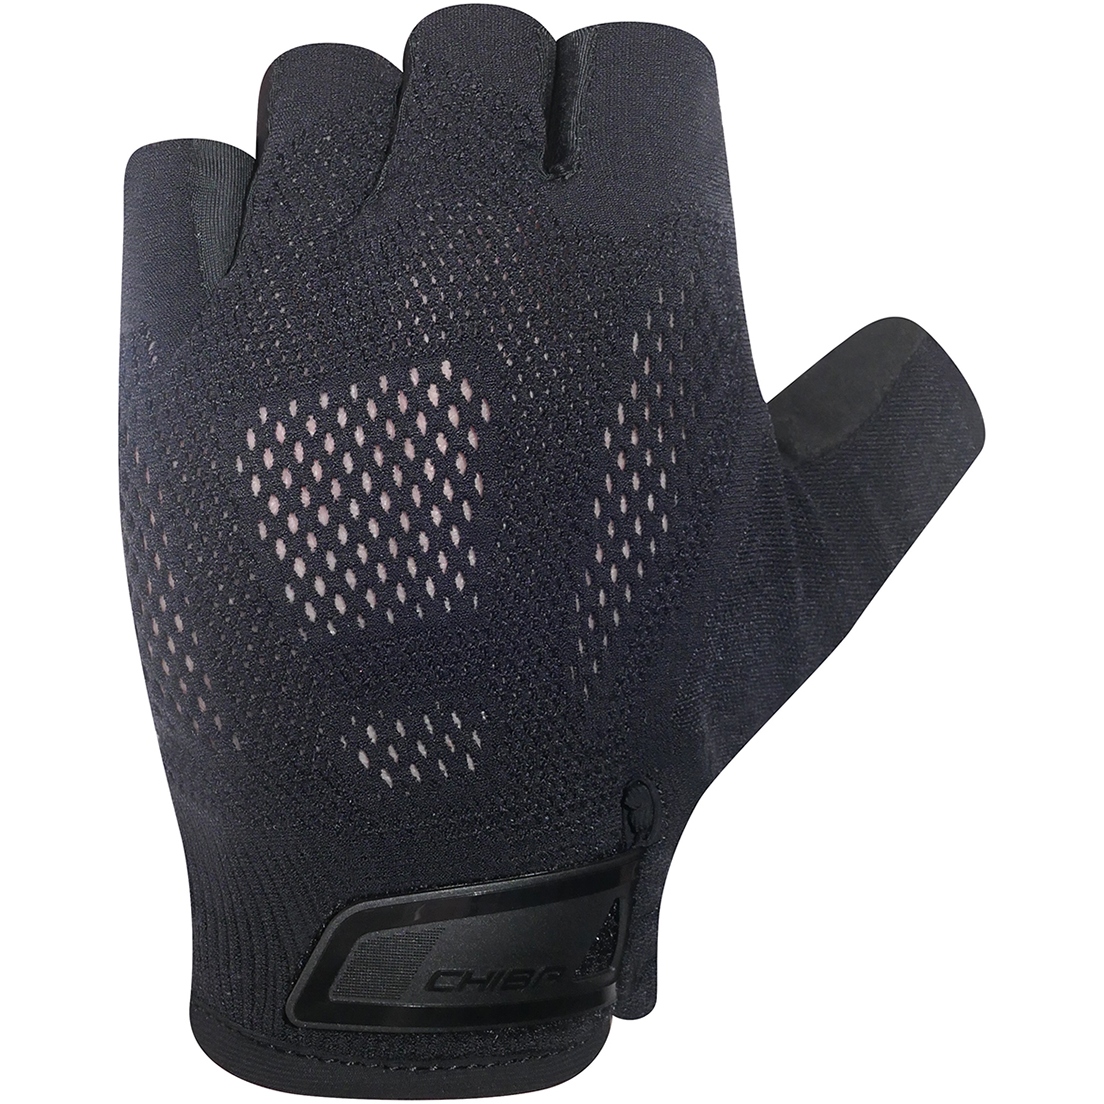 Produktbild von Chiba Gel Evolution Kurzfinger-Handschuhe - schwarz